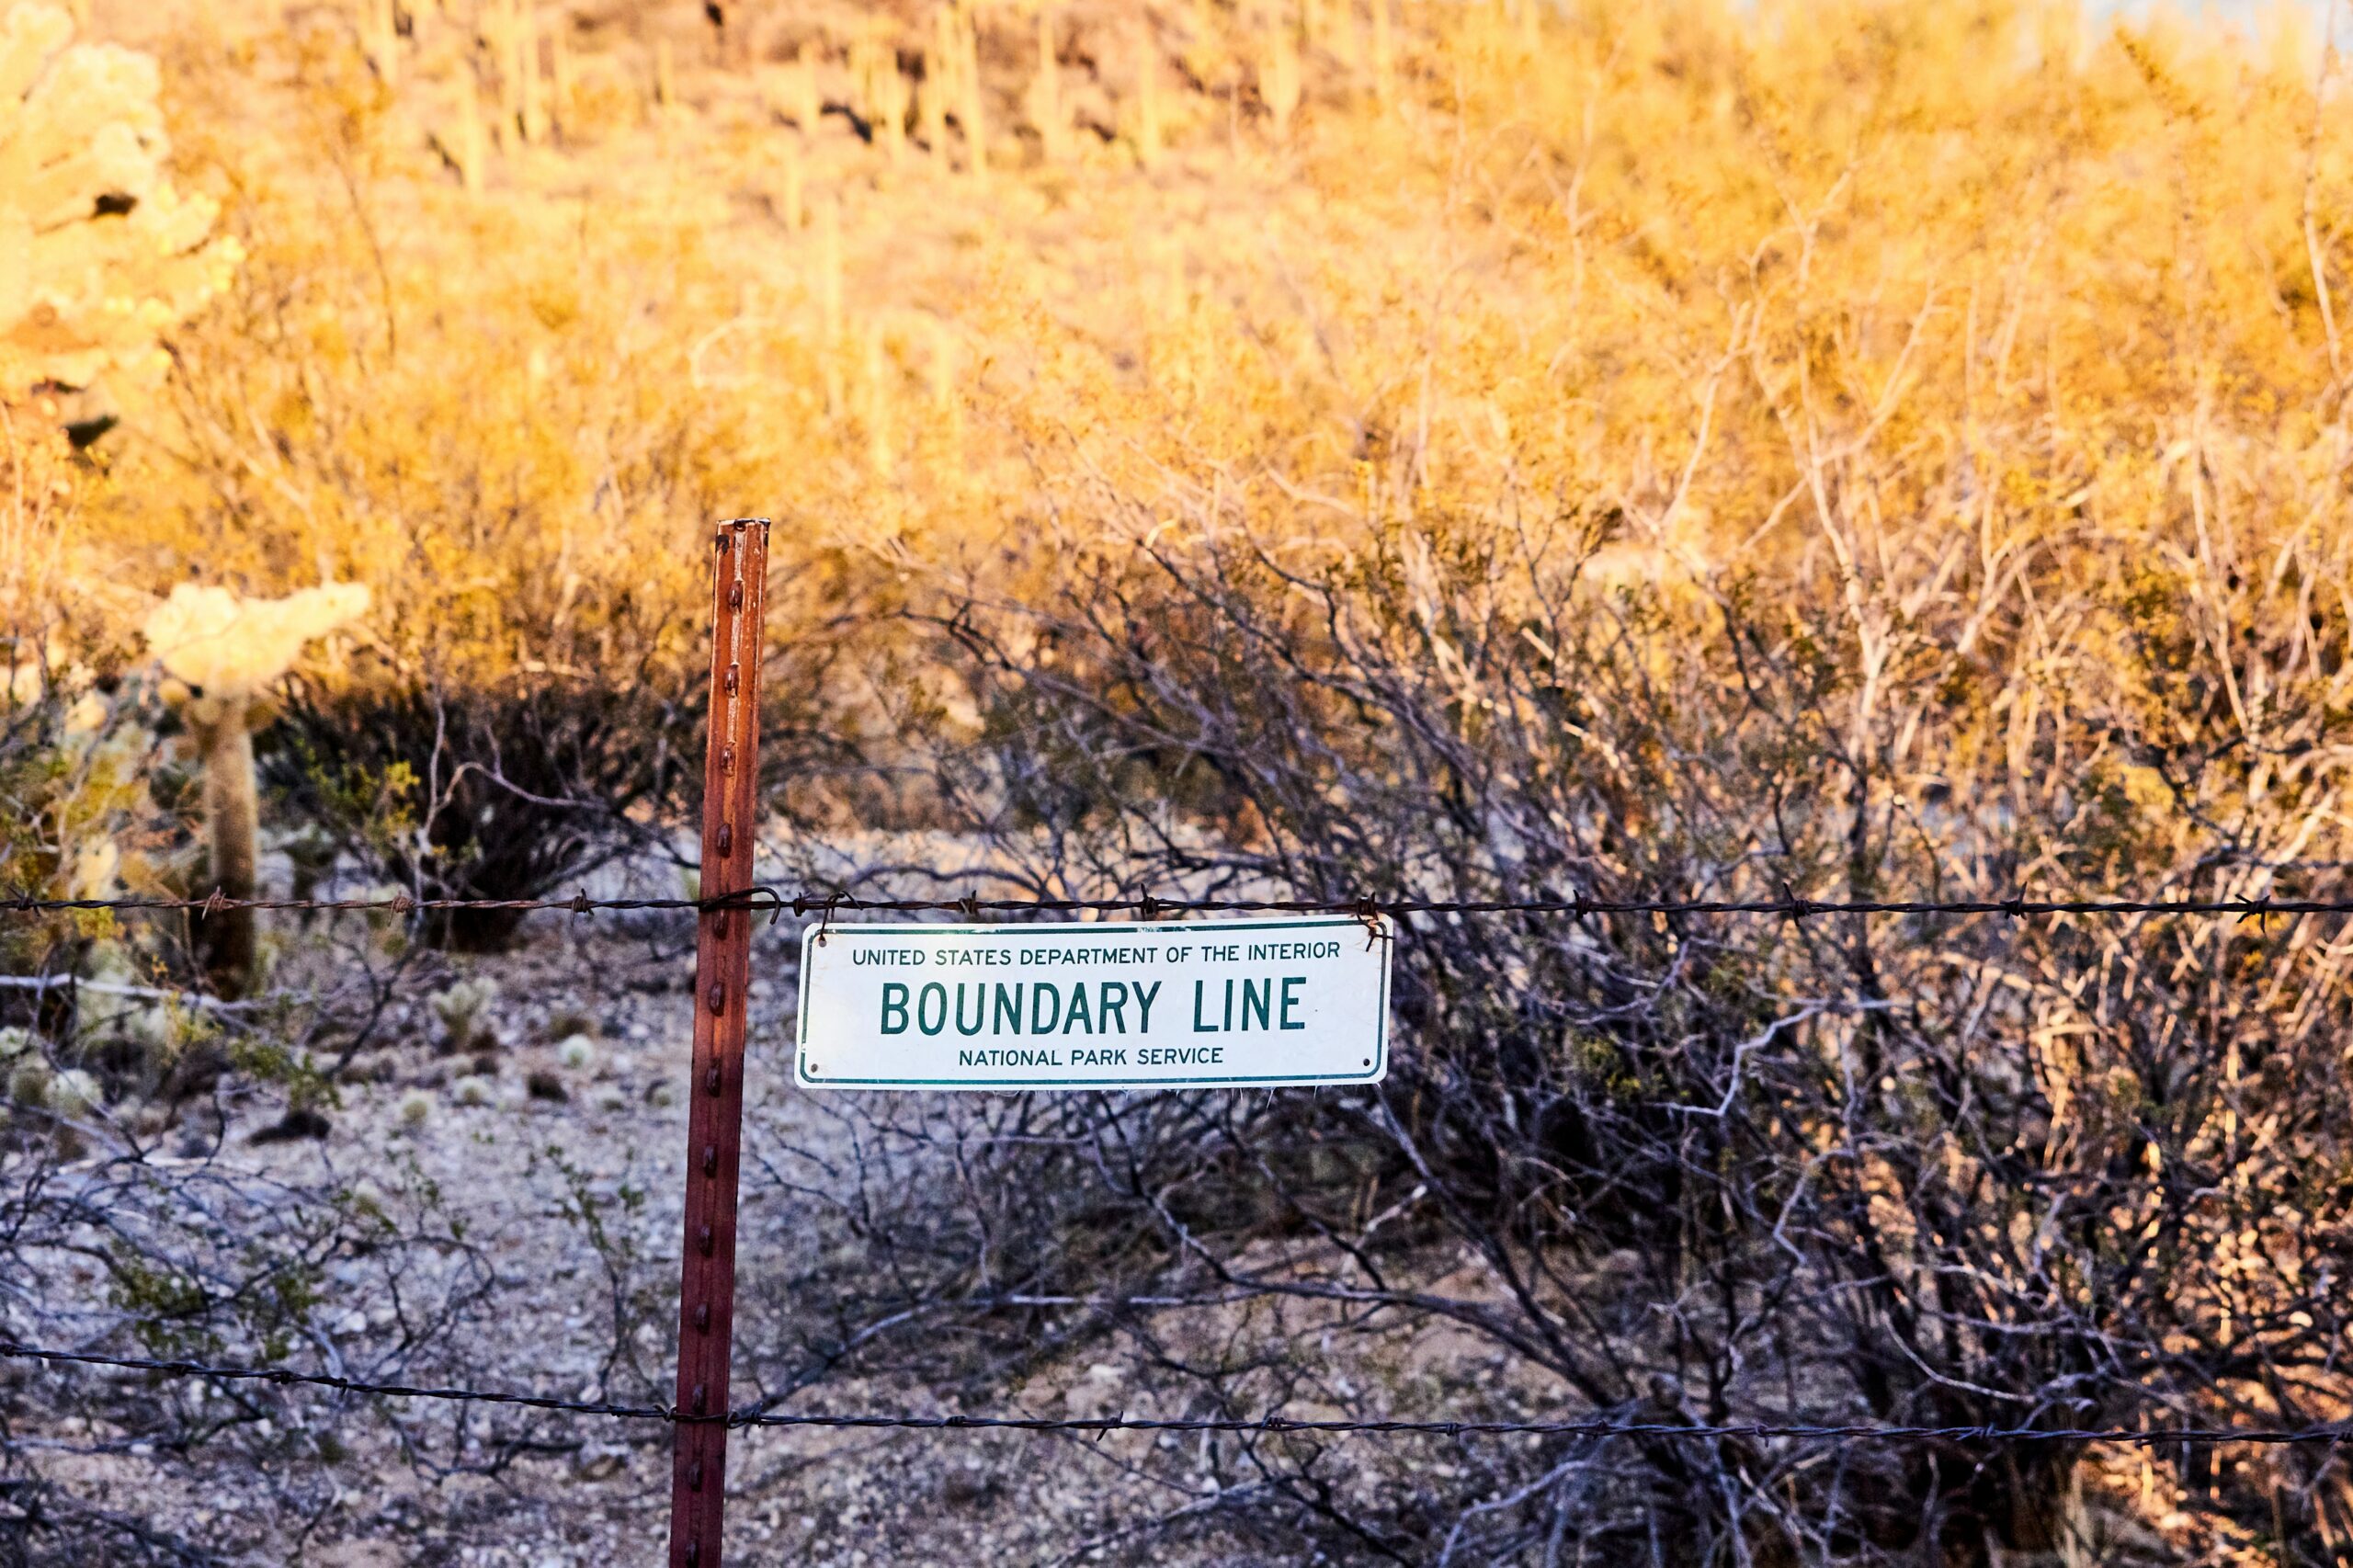 Bondary line